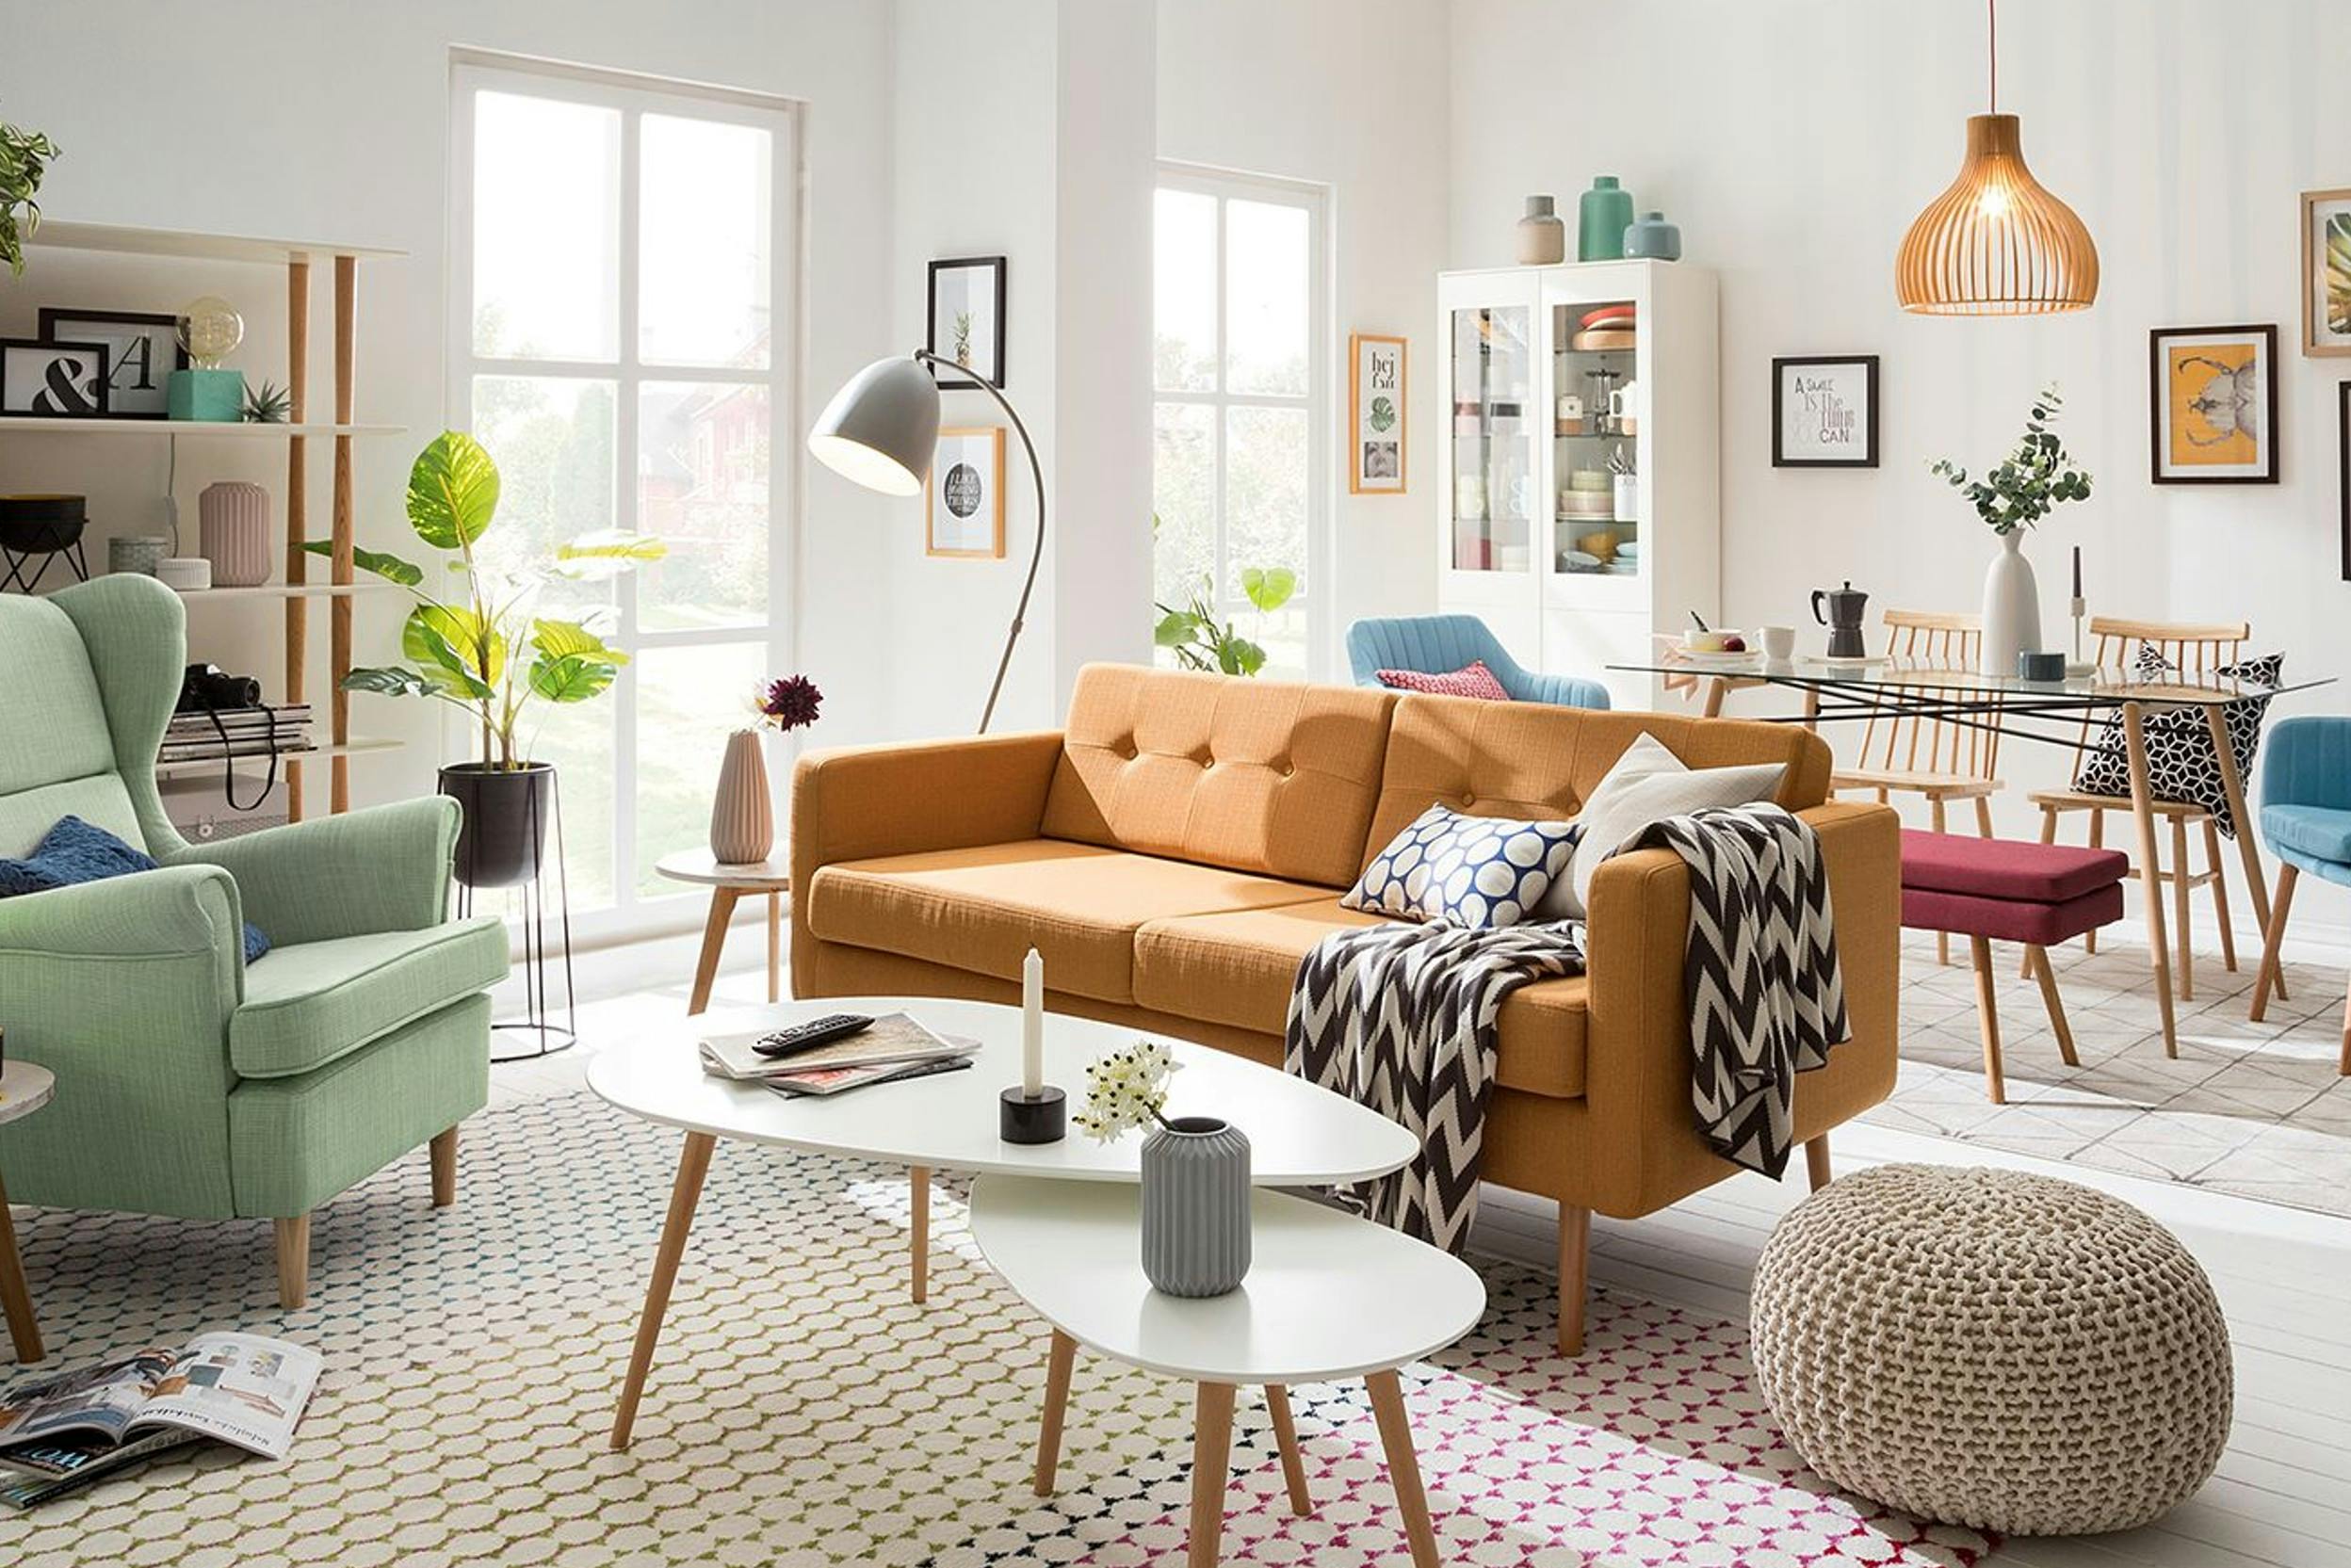 Diviser un espace avec des rideaux - IKEA